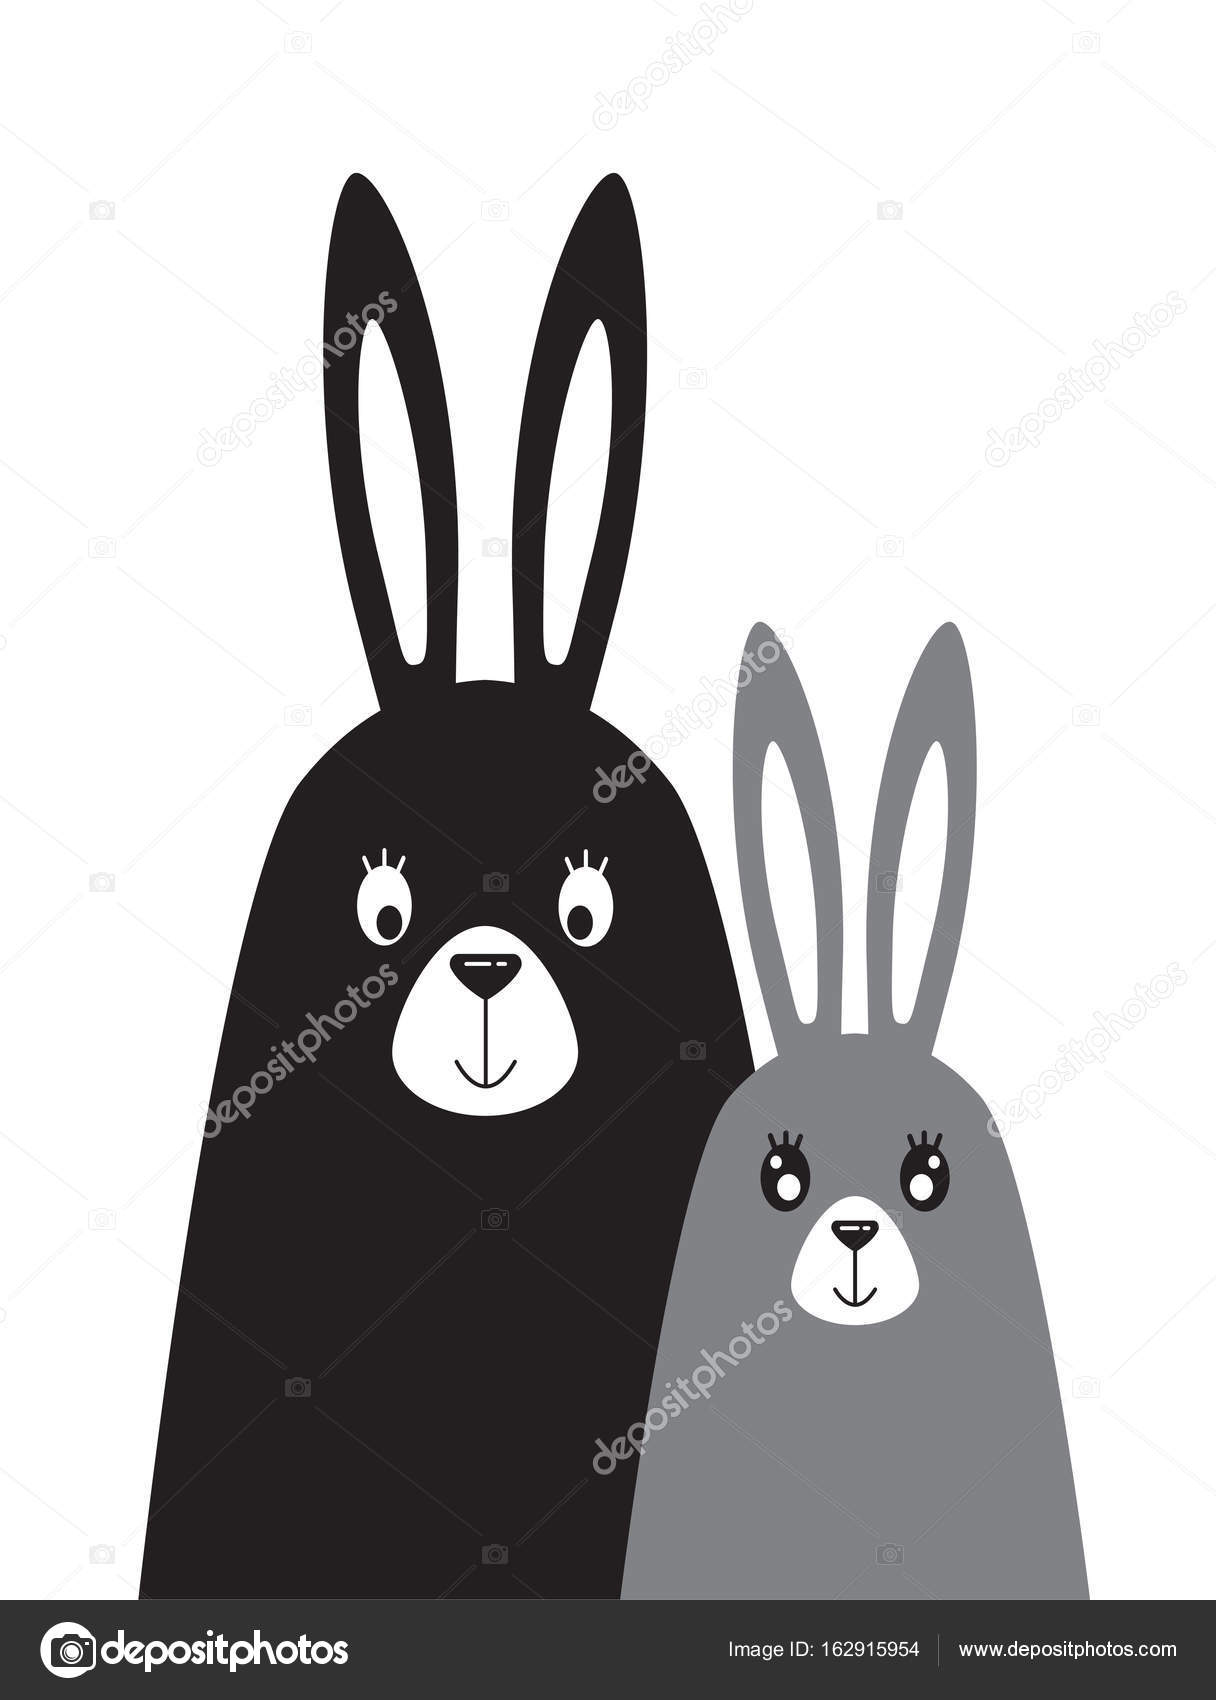 Papá conejo imágenes de stock de arte vectorial | Depositphotos